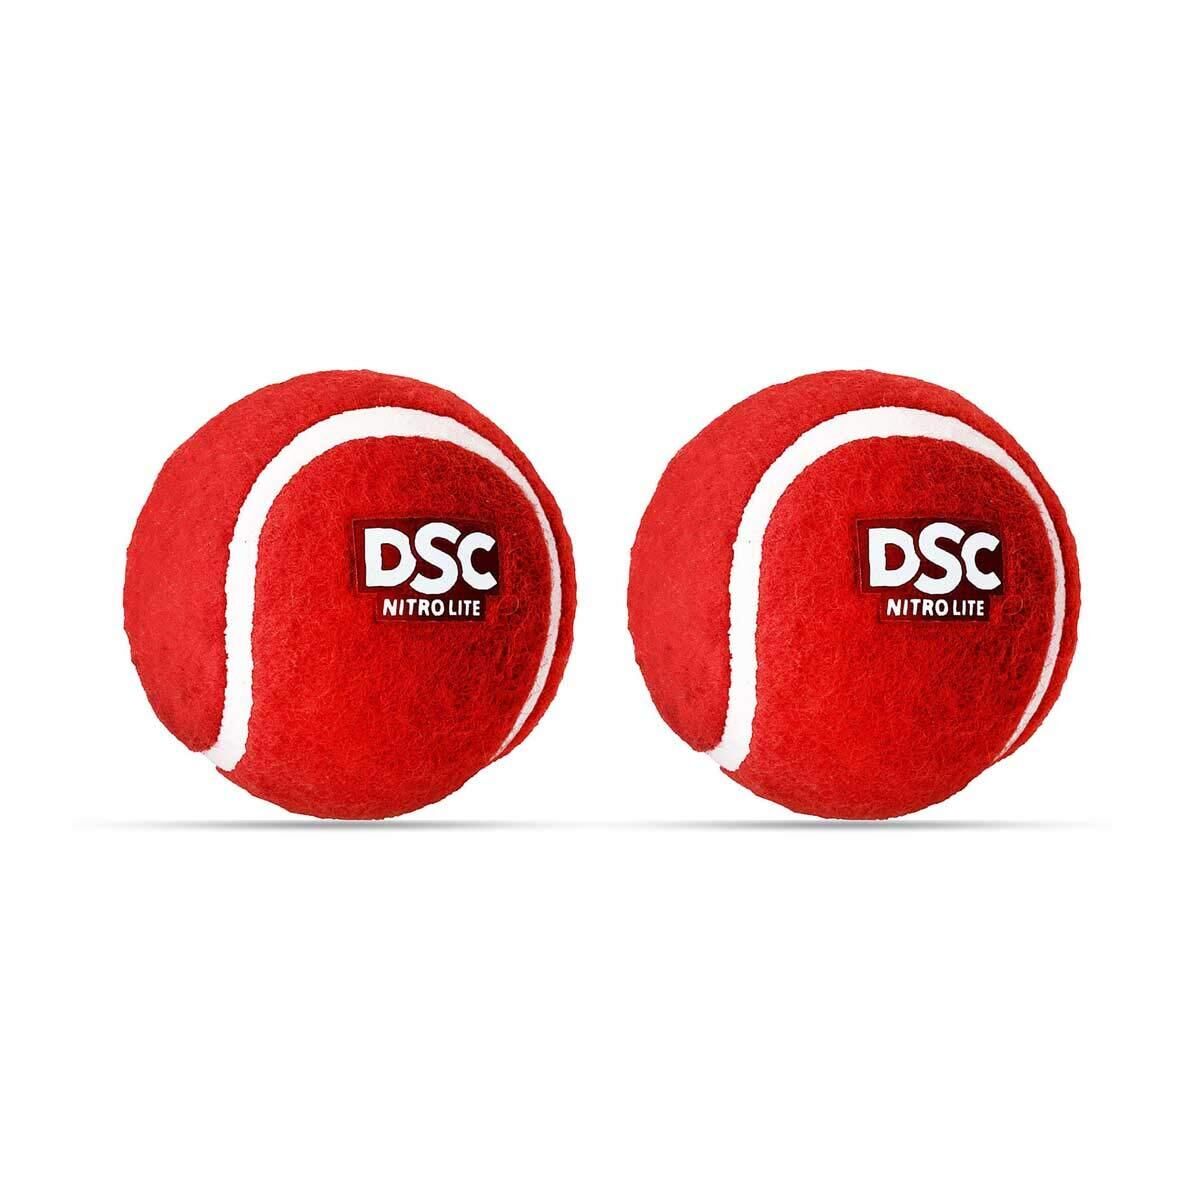 DSC DSC Nitro Light Tennis Ball Pack of 2)